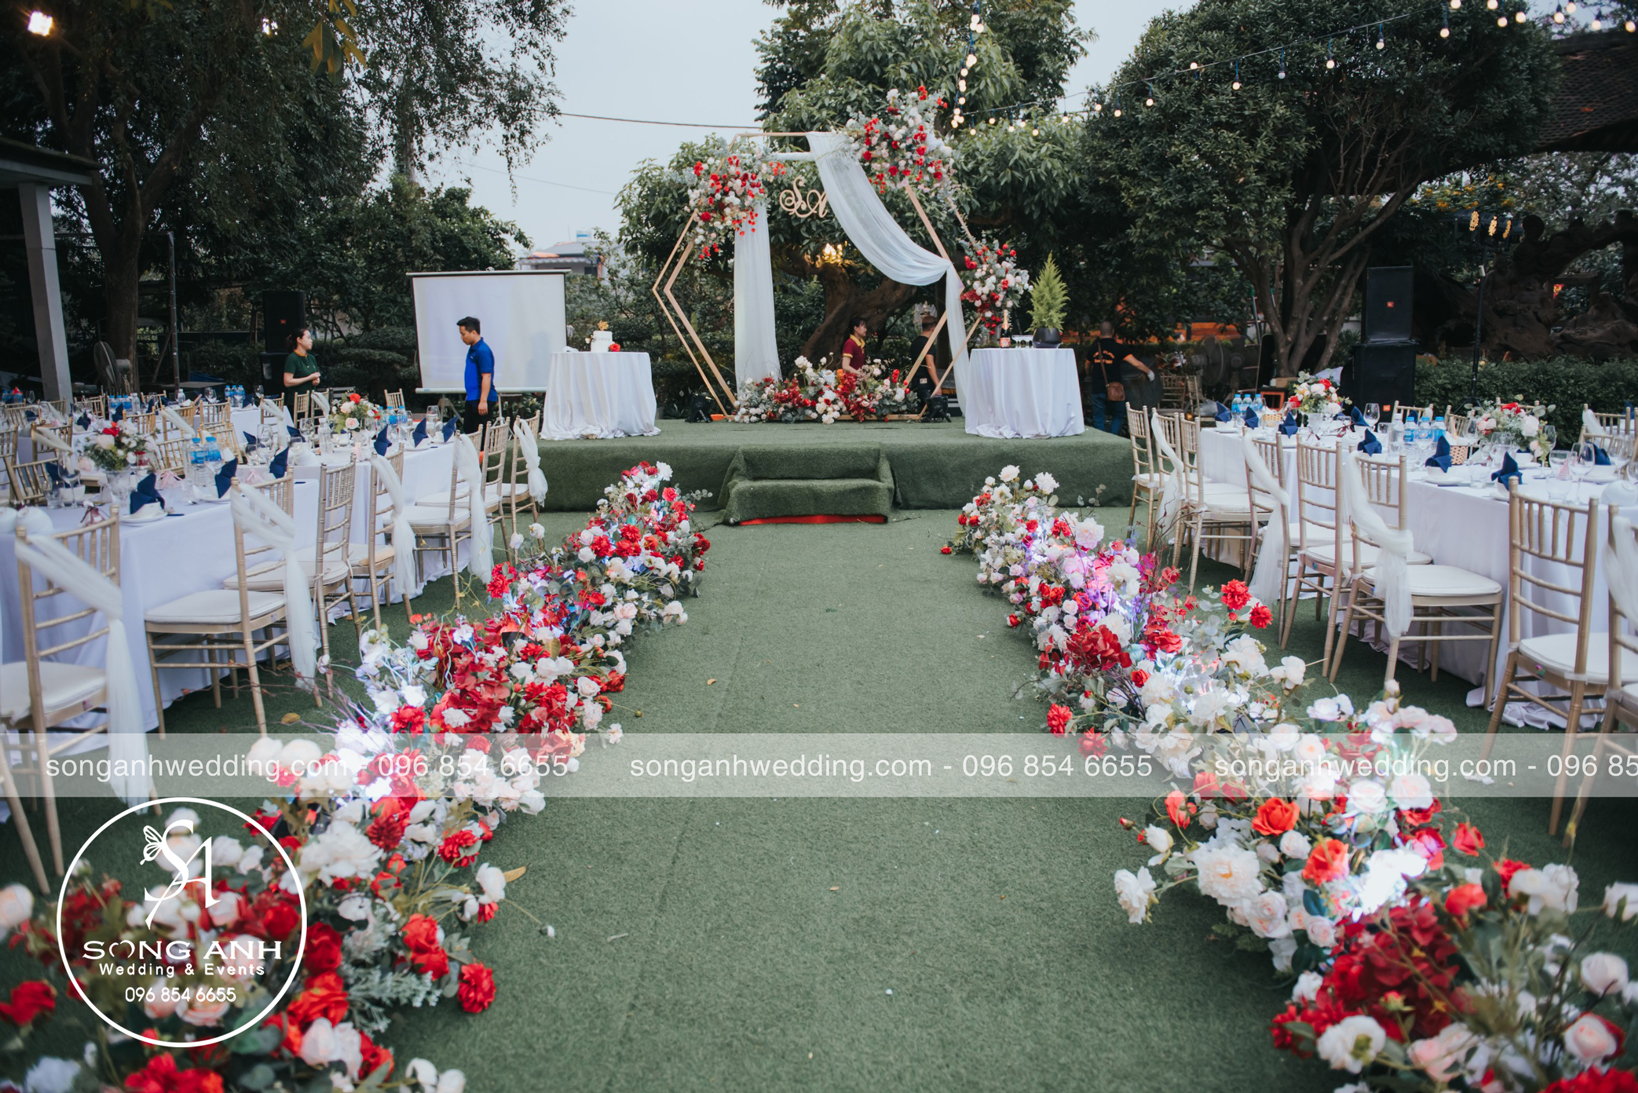 đơn vị cung cấp dịch vụ trang trí tiệc cưới uy tín tại Hà Nội